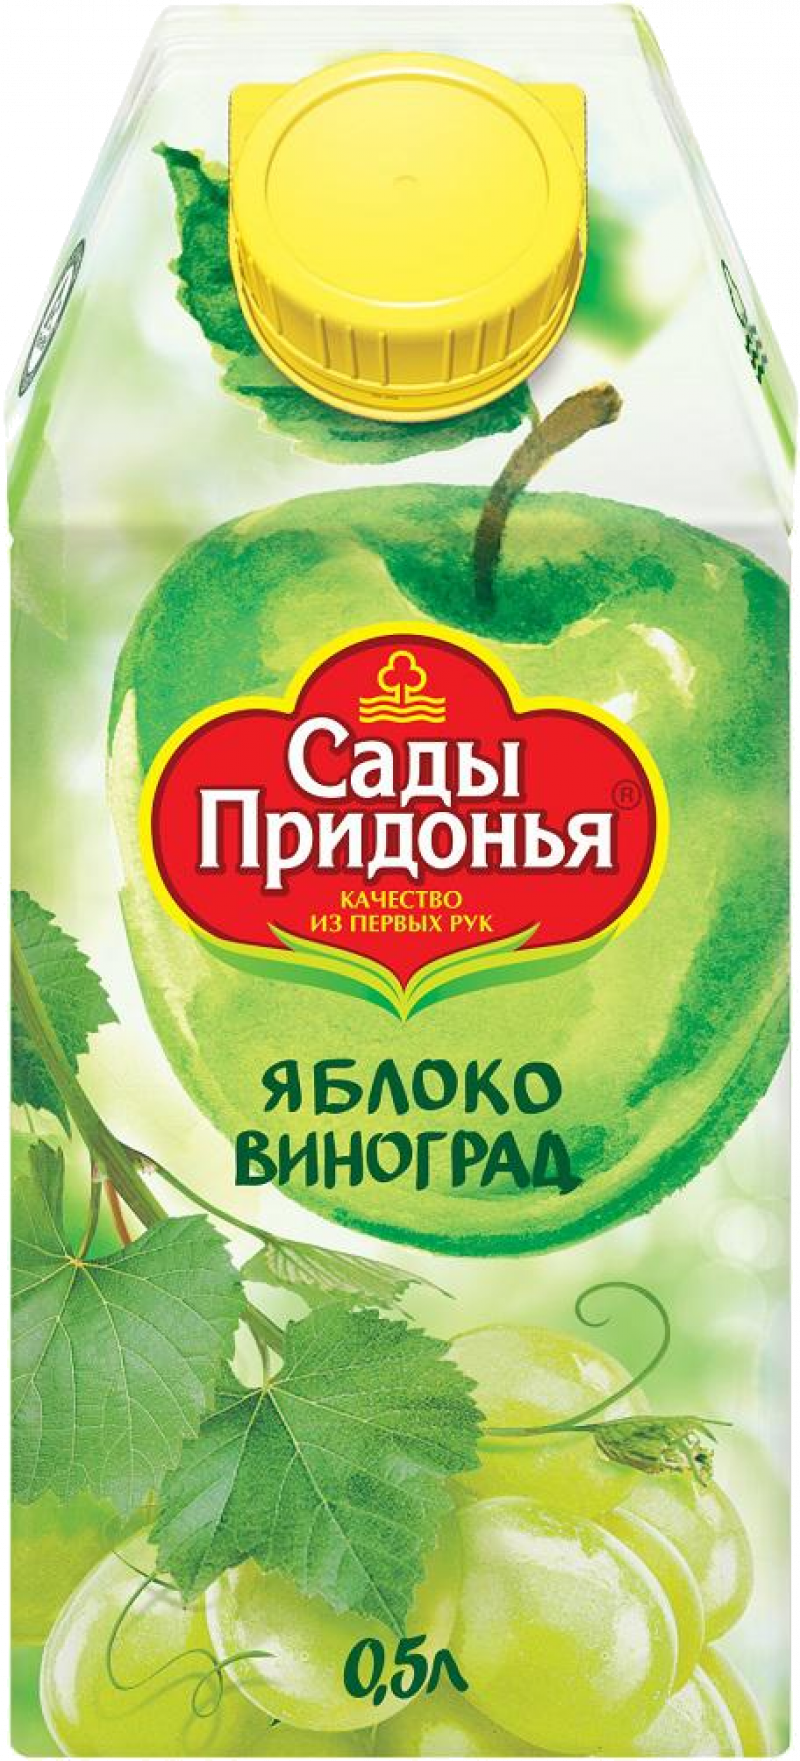 Сок 0,5л Сады Придонья сок яблочно-виноградный